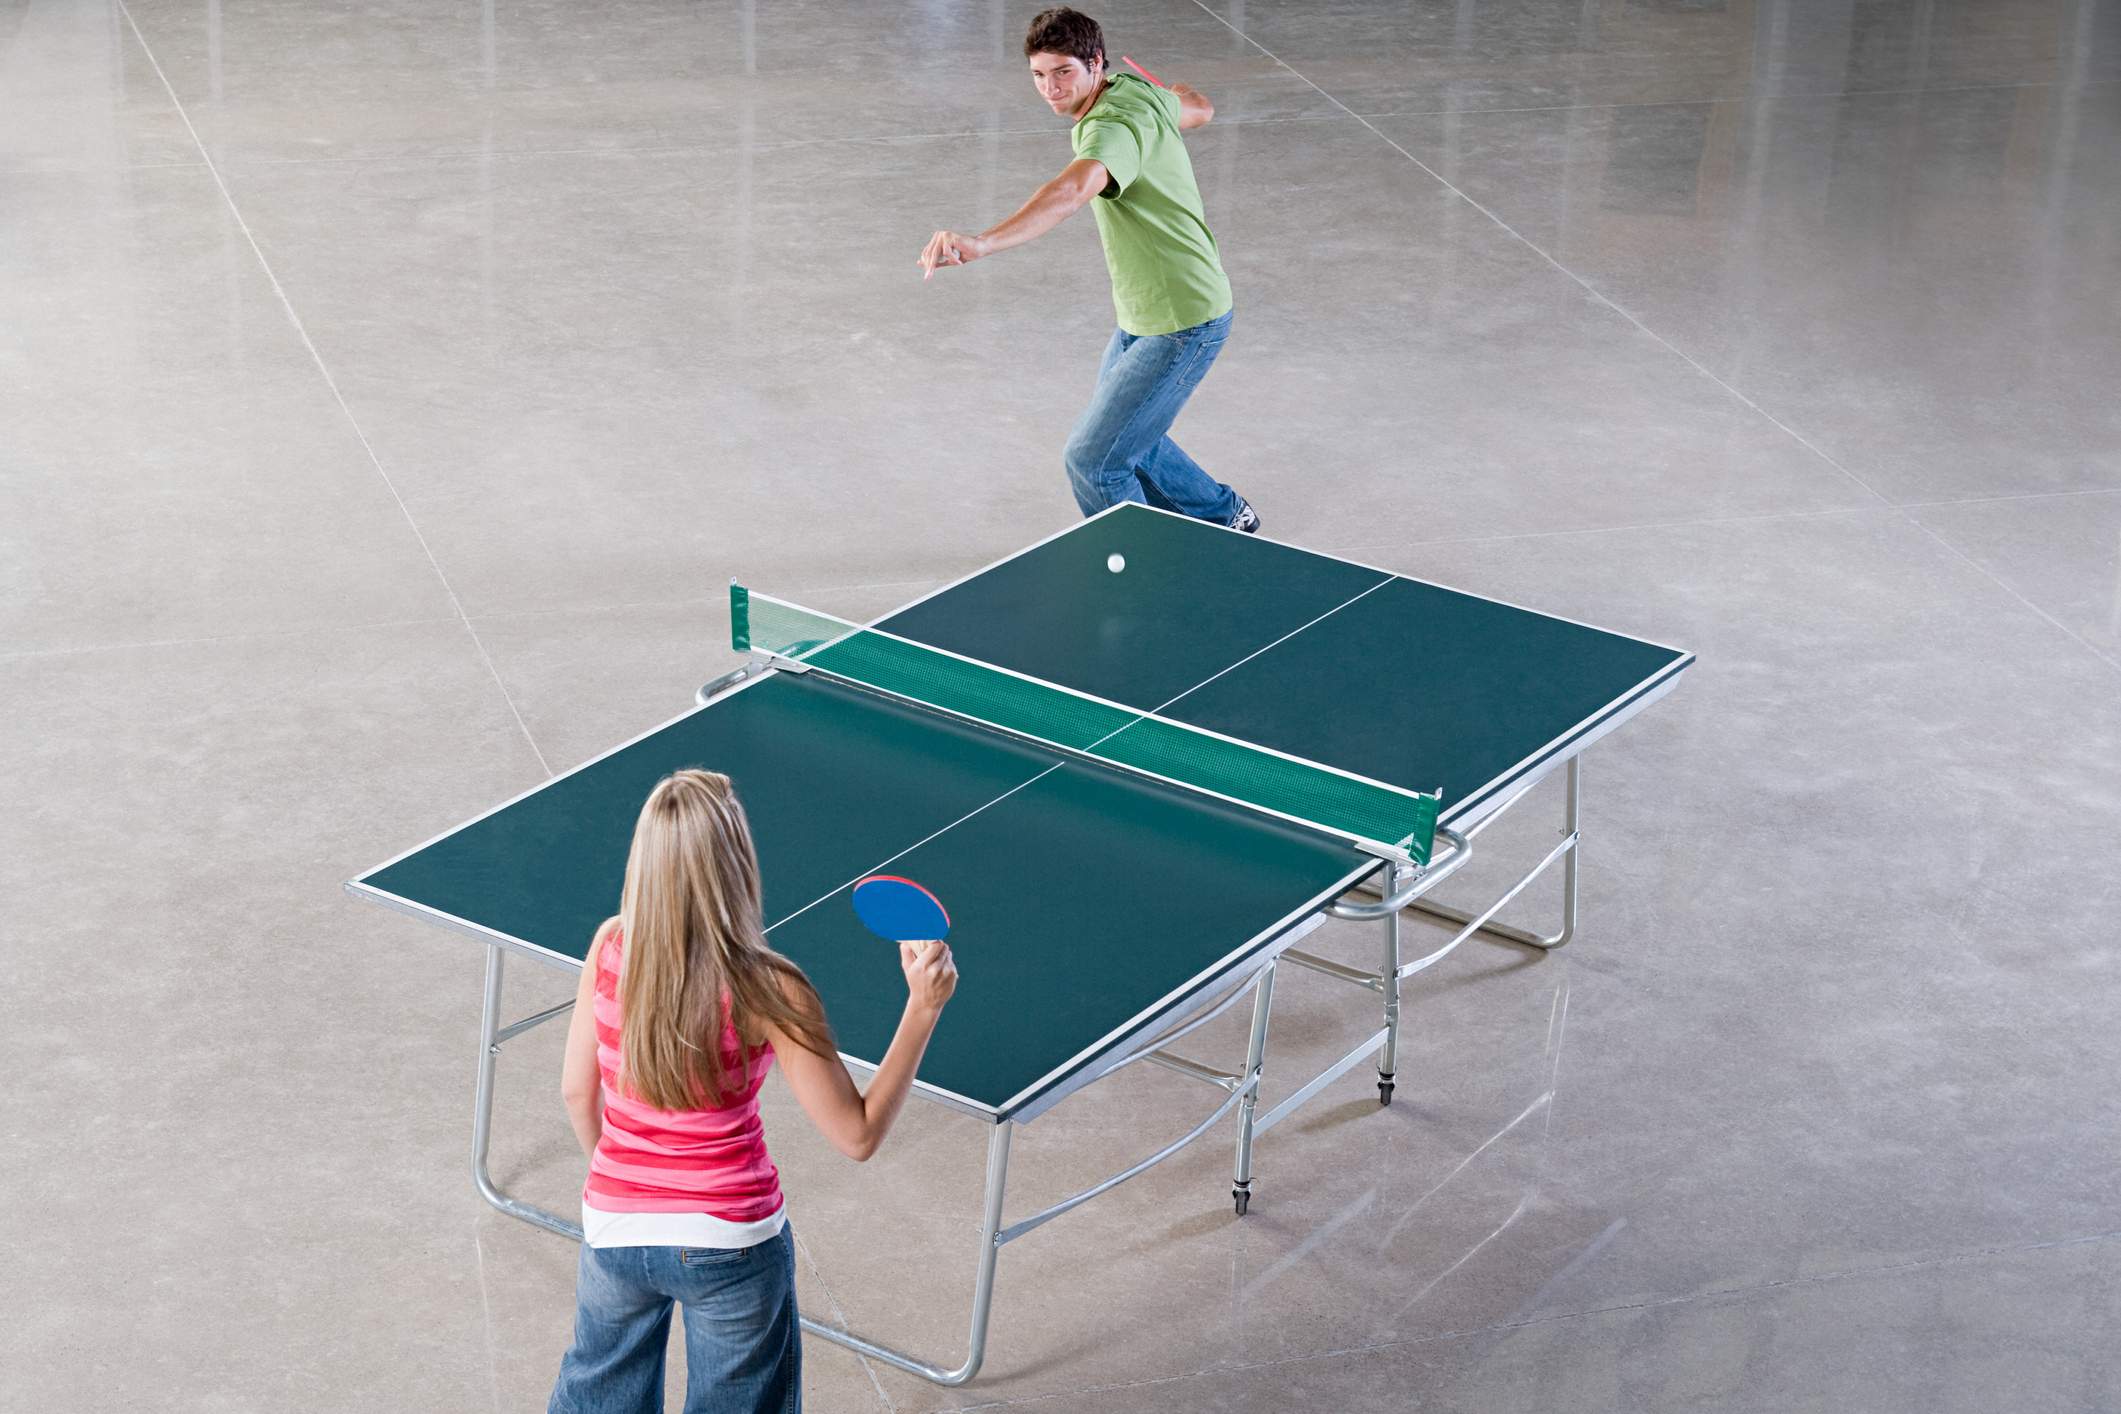 Die meisten Jugendlichen sind voller Energie und Tischtennis hilft, diese Energie zu Fokussieren.